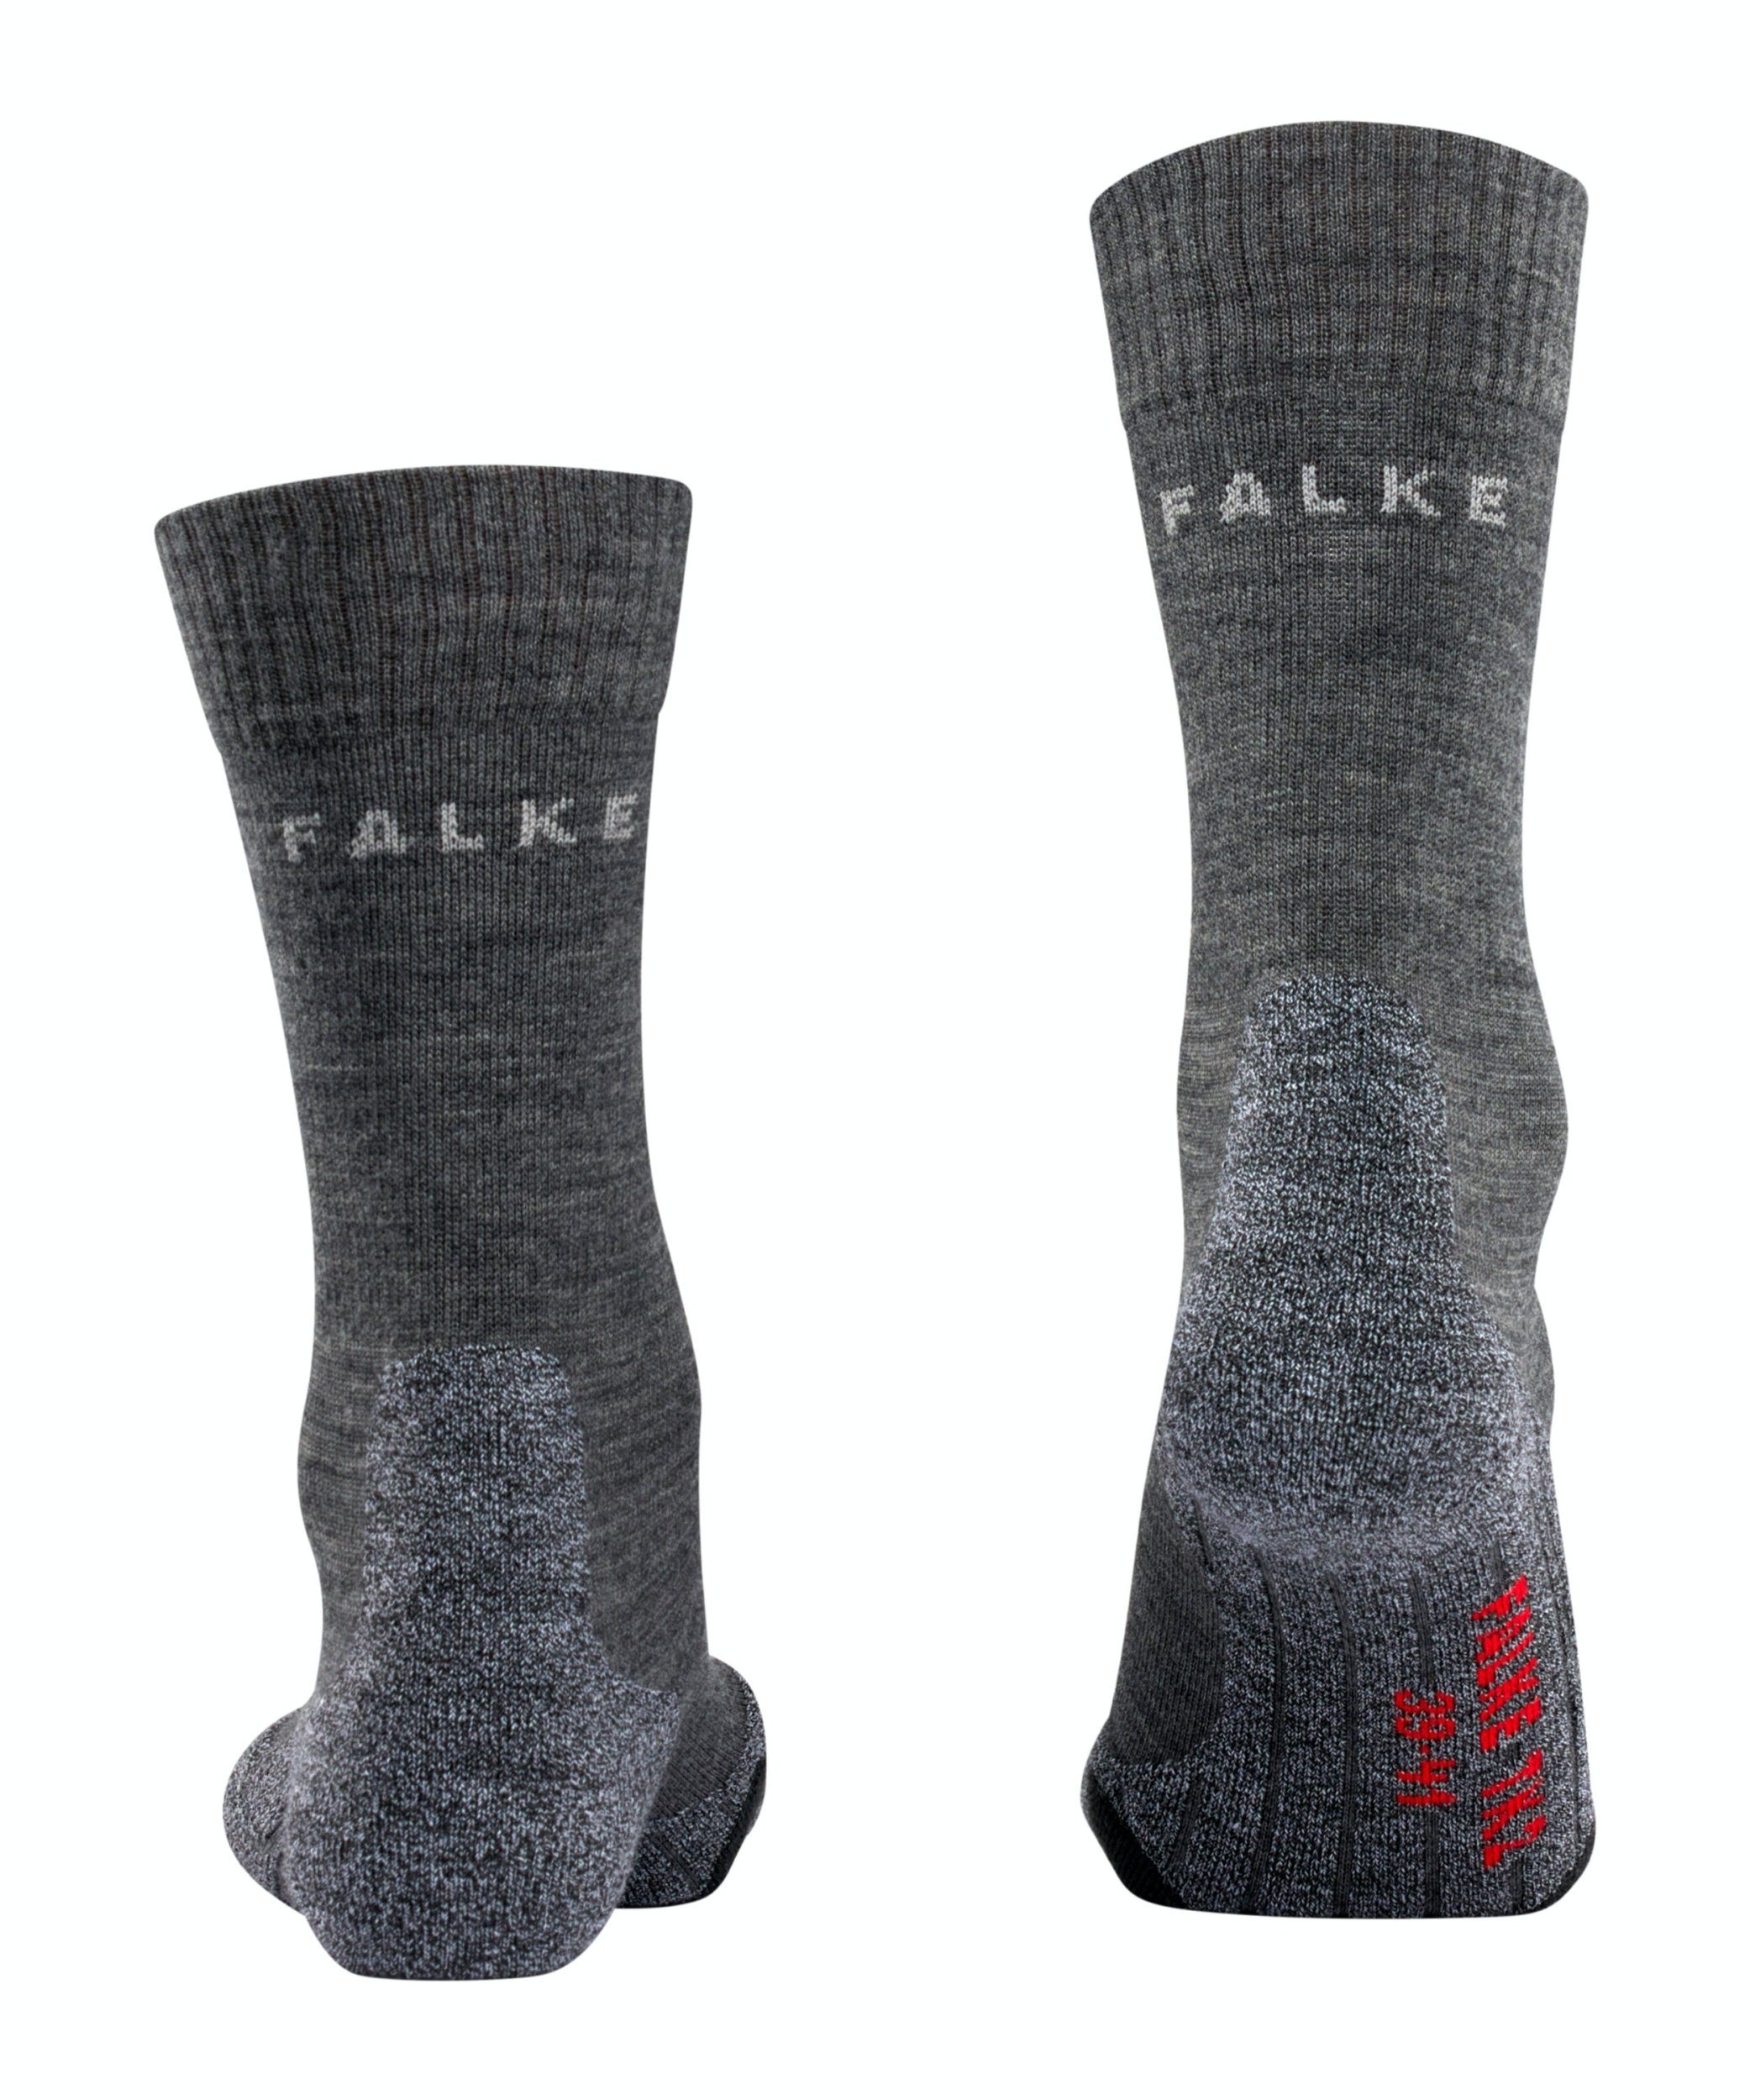 FALKE Socken NOS TK2,asphalt FALKE mel. asphalt mel